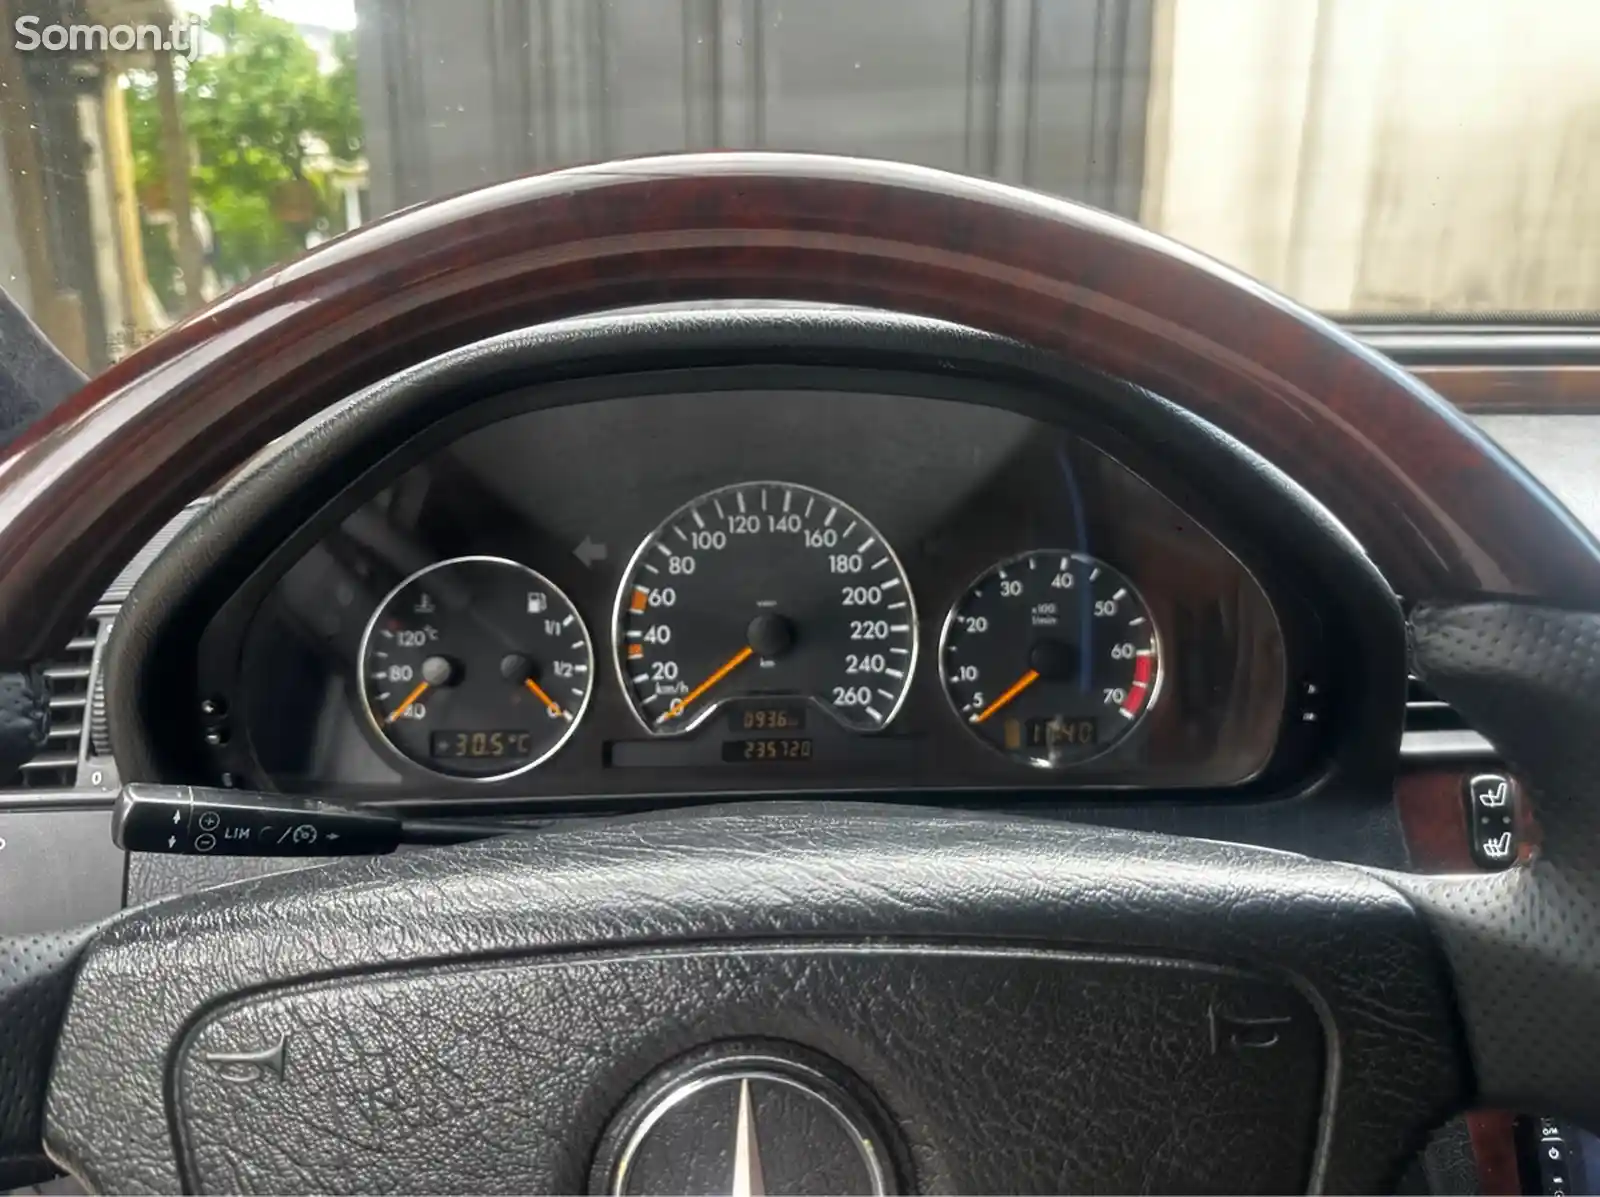 Mercedes-Benz C class, 2000-11